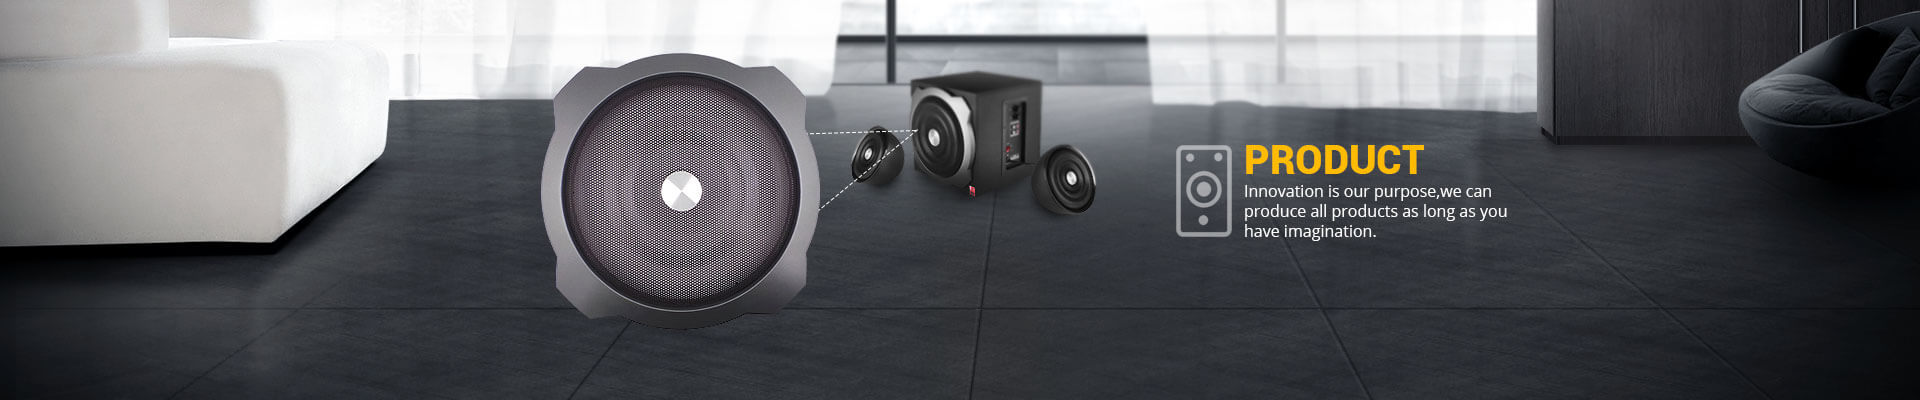 Burj Al Arab Bluetooth Speaker - Gift Speaker